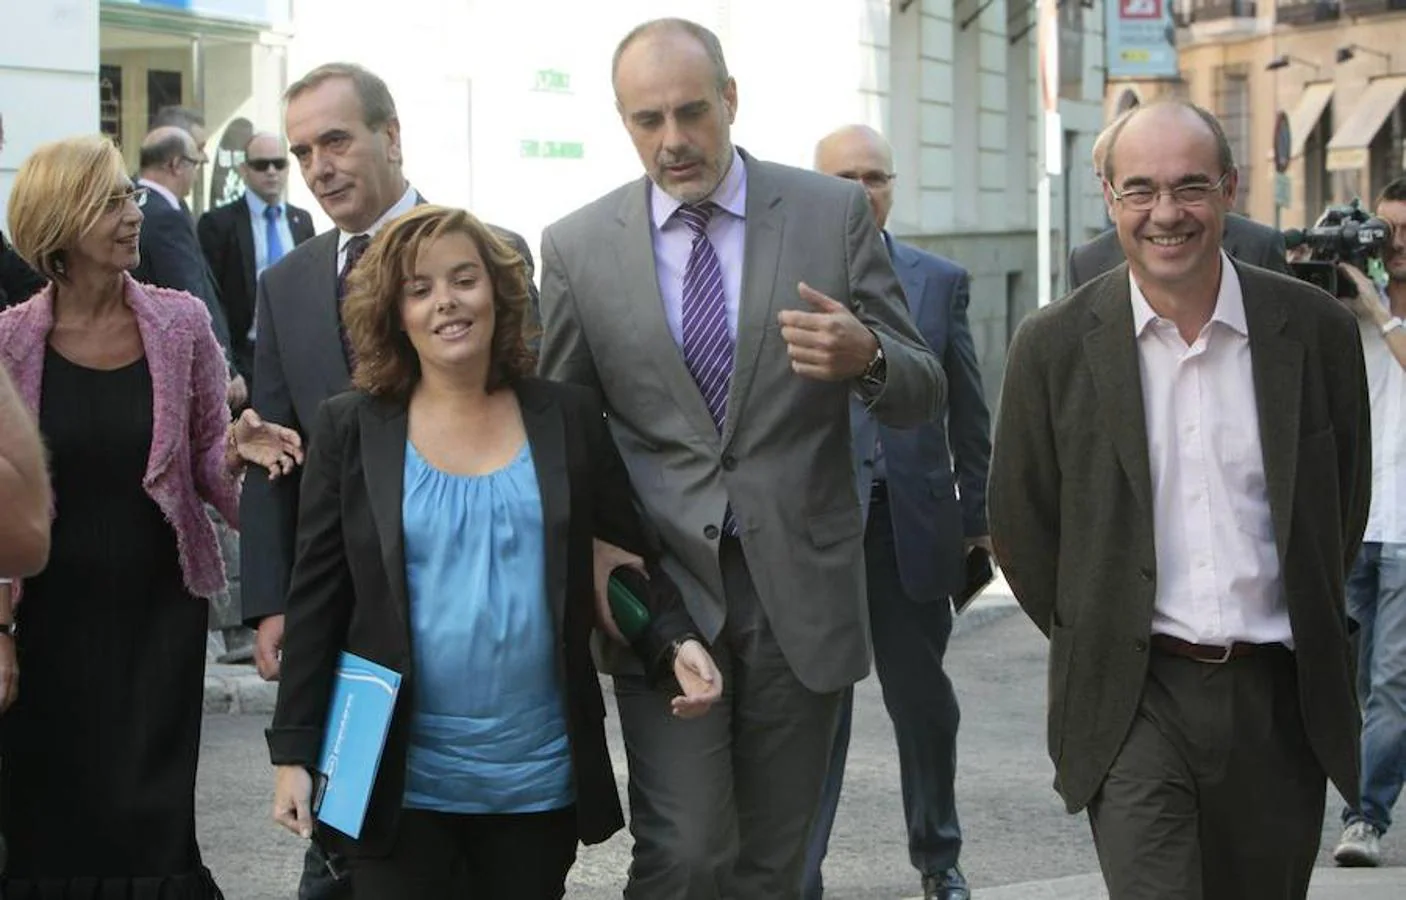 Junto al resto de portavoces parlamentarios, Rosa Díez (UPyD), Soraya Sáenz de Santamaría (PP), Joan Ridao (ERC) y Francisco Jorquera (BNG), a la salida del Congreso de los Diputados que en la última sesión de la legislatura, en el año 2011.